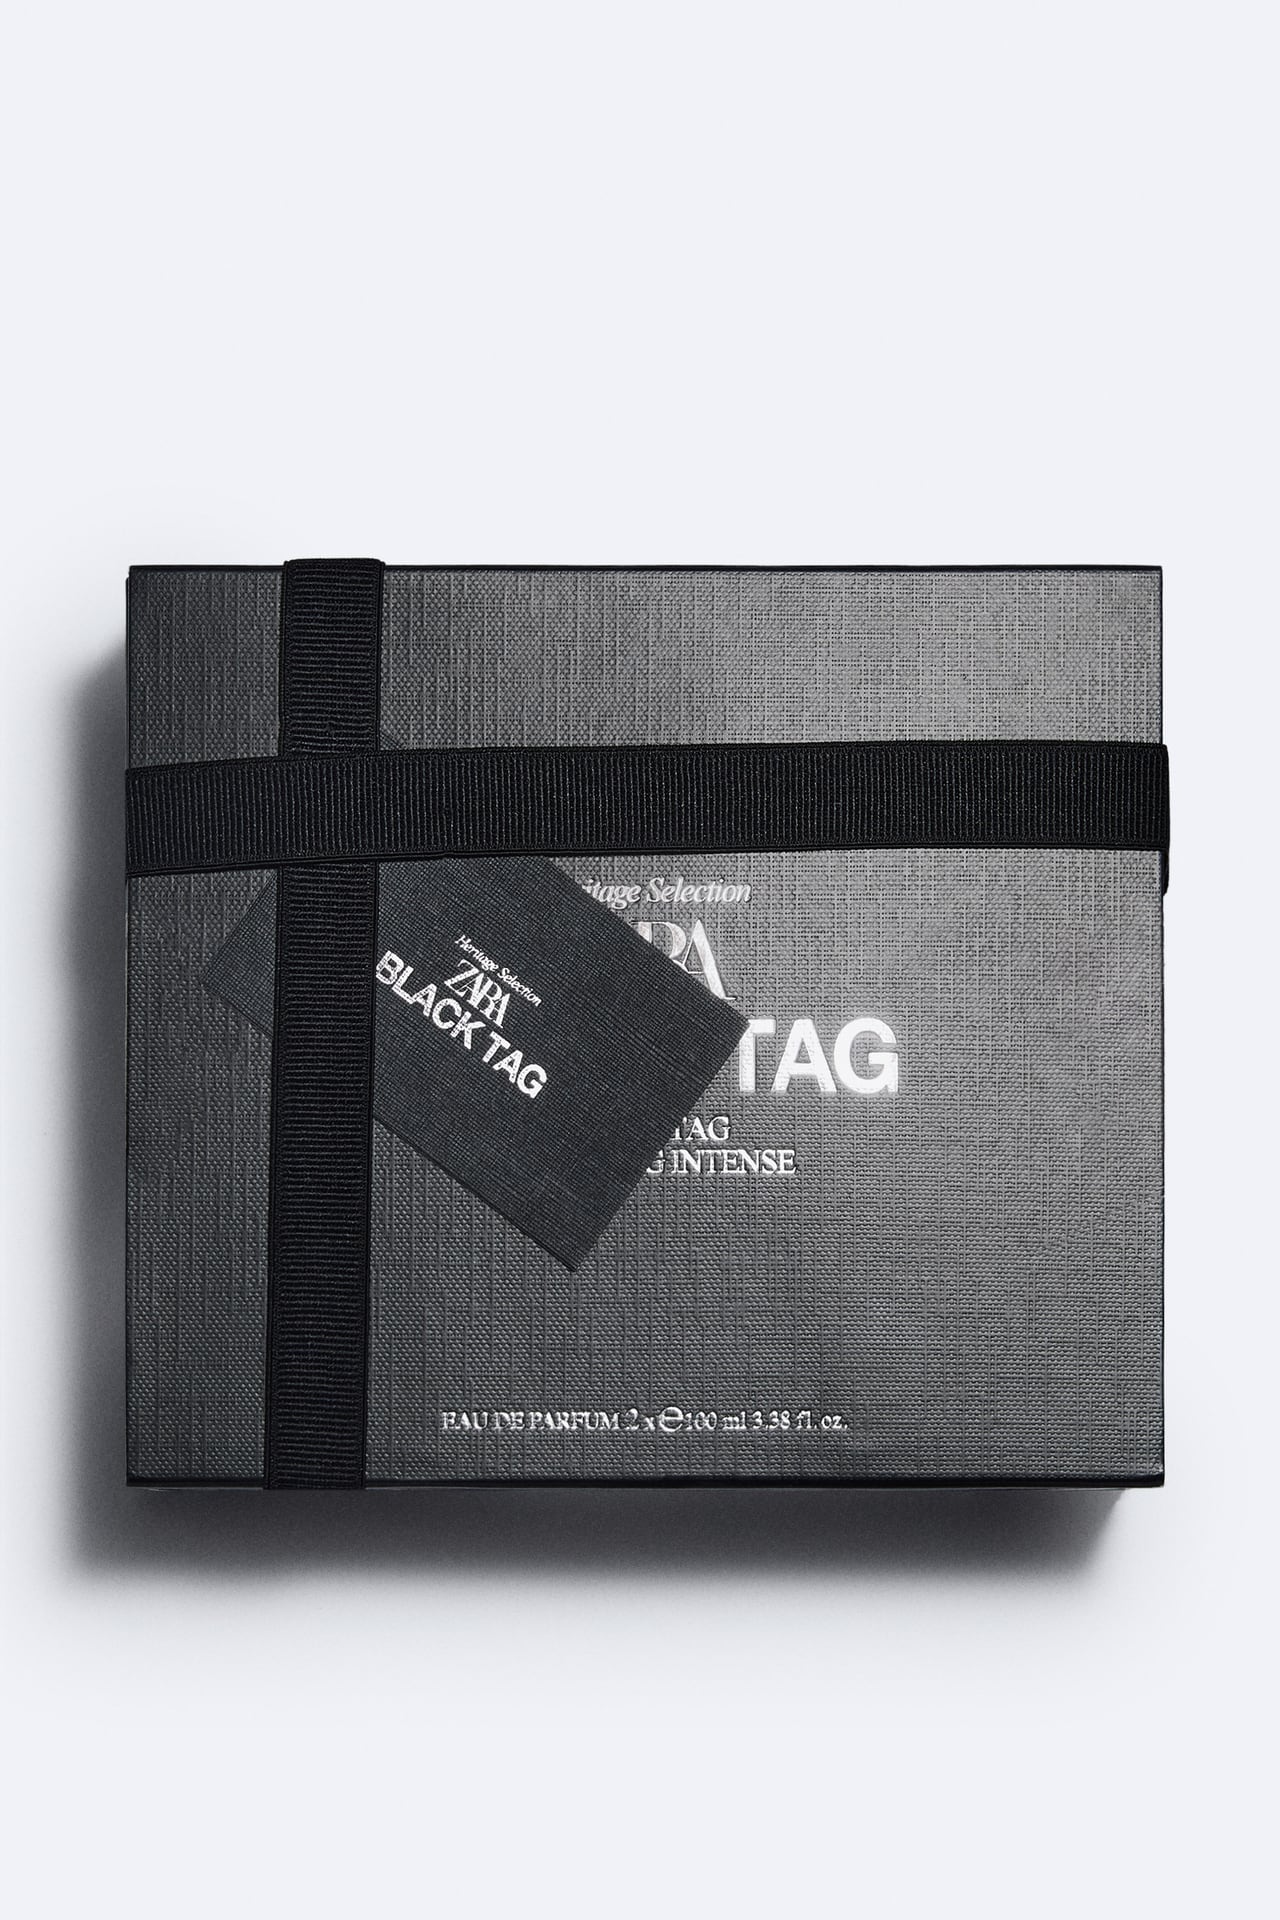 ZARA BLACK TAG + BLACK TAG INTENSE PERFUME 100ML X 2